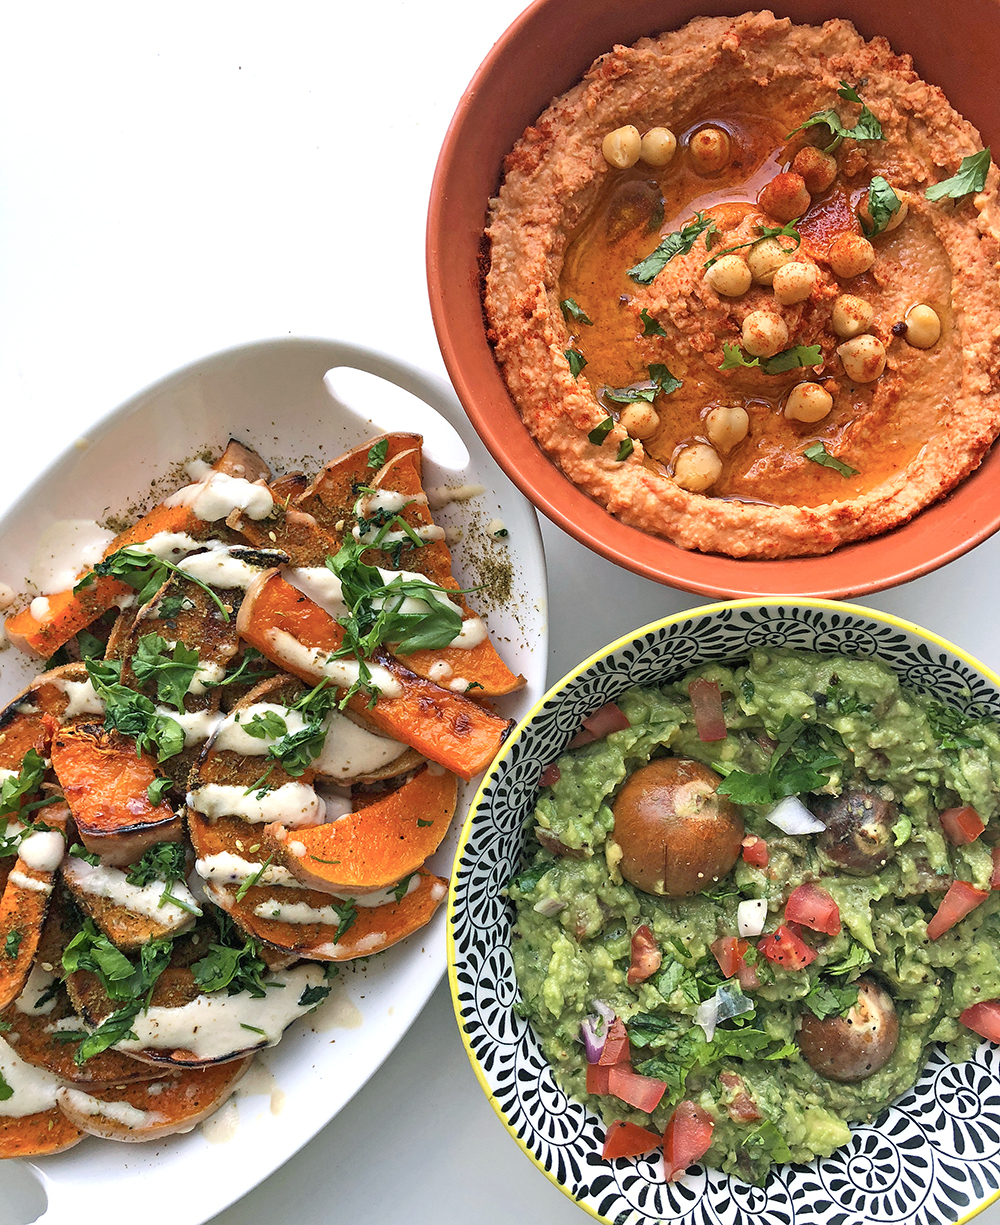 Nada Elbarshoumi publie sur son blog des recettes de plats du Moyen-Orient adaptés aux végétaliens (avec l’aimable autorisation de onearabvegan.com)